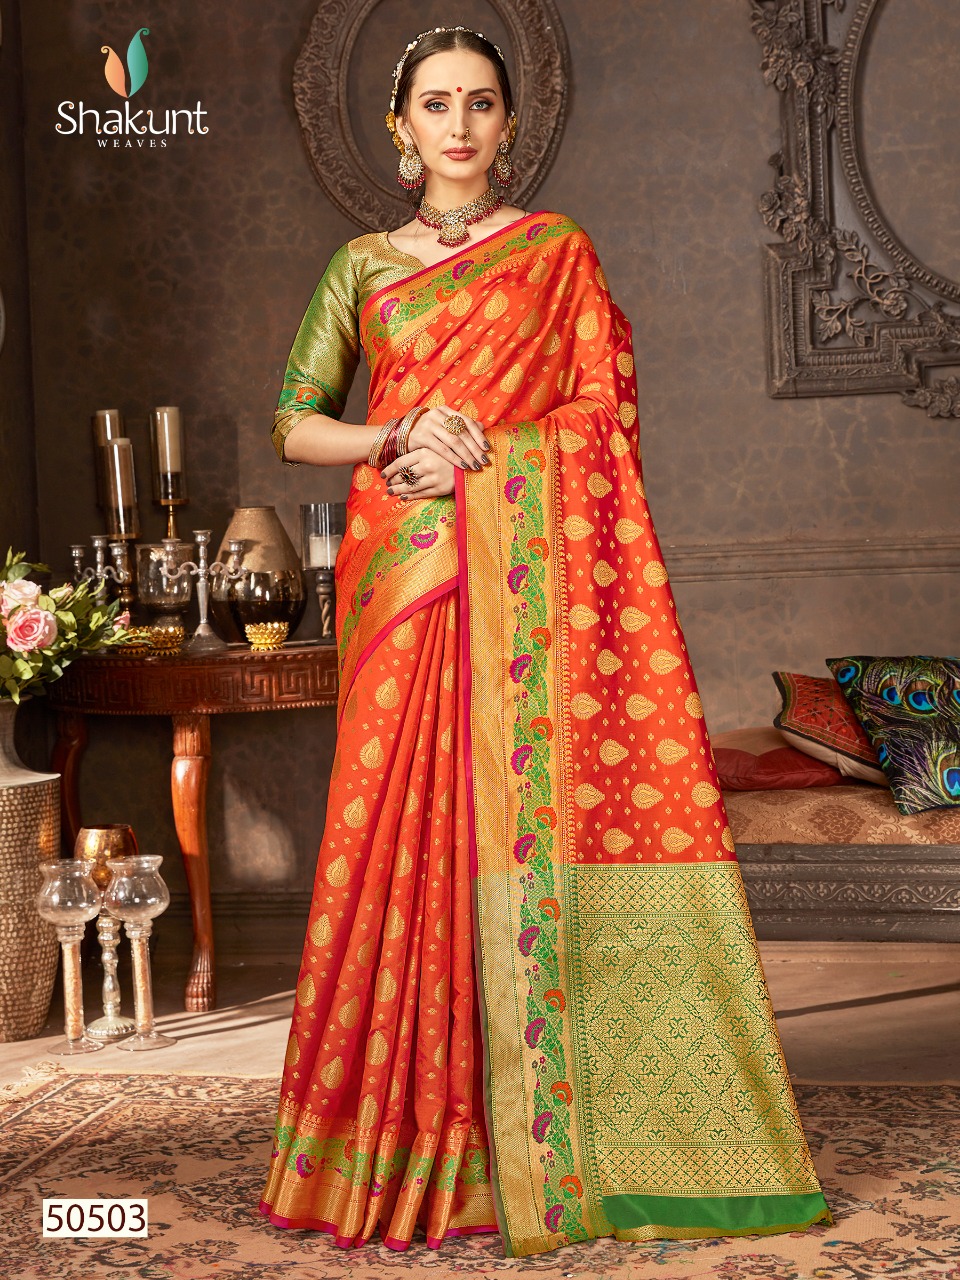 Shakunt Ayushmati By Triveni Banarsi Silk Sarees Cheapest Price In Surat Textile